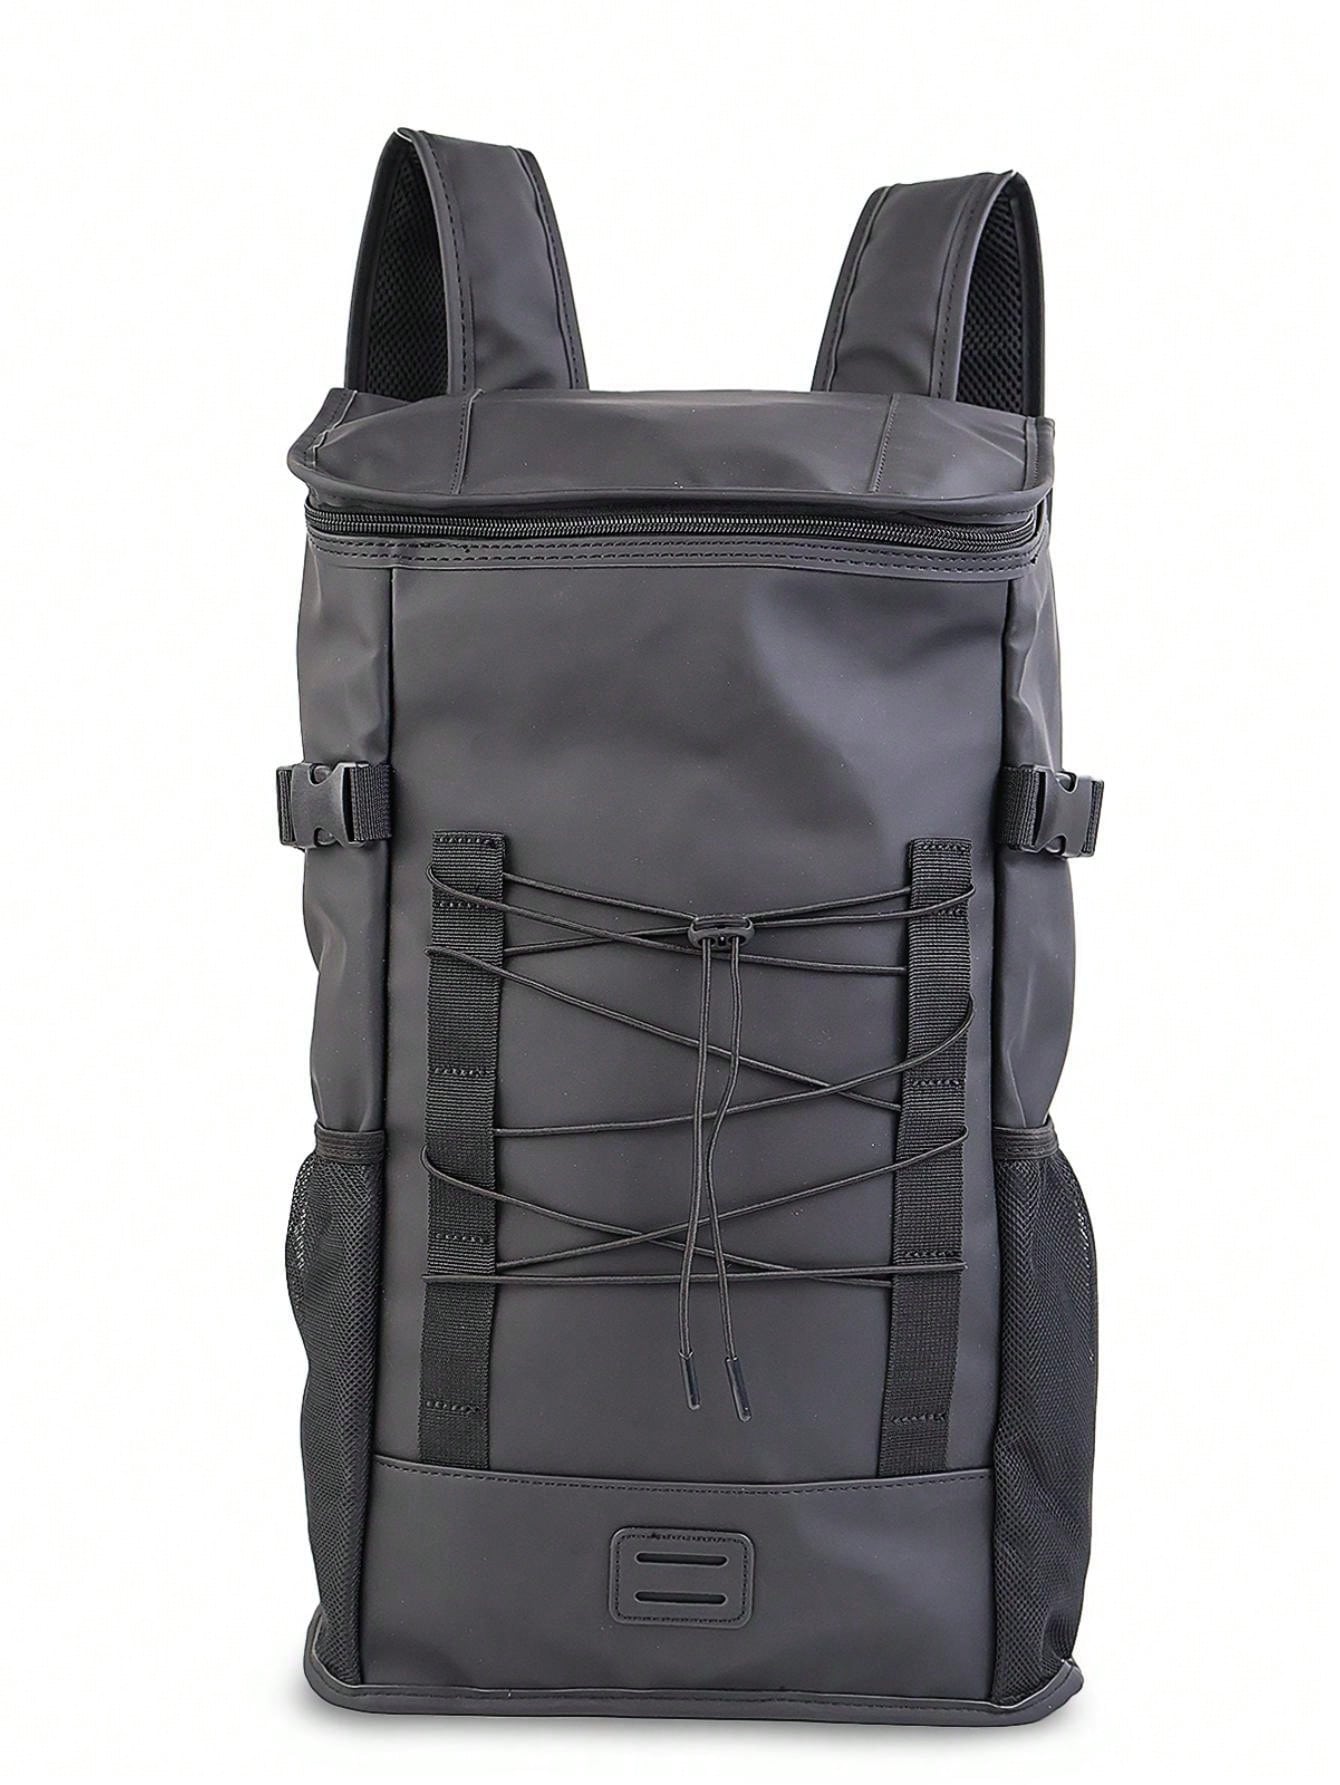 Классический многофункциональный рюкзак большой вместимости с отделением для ноутбука для женщин и мужчин, черный